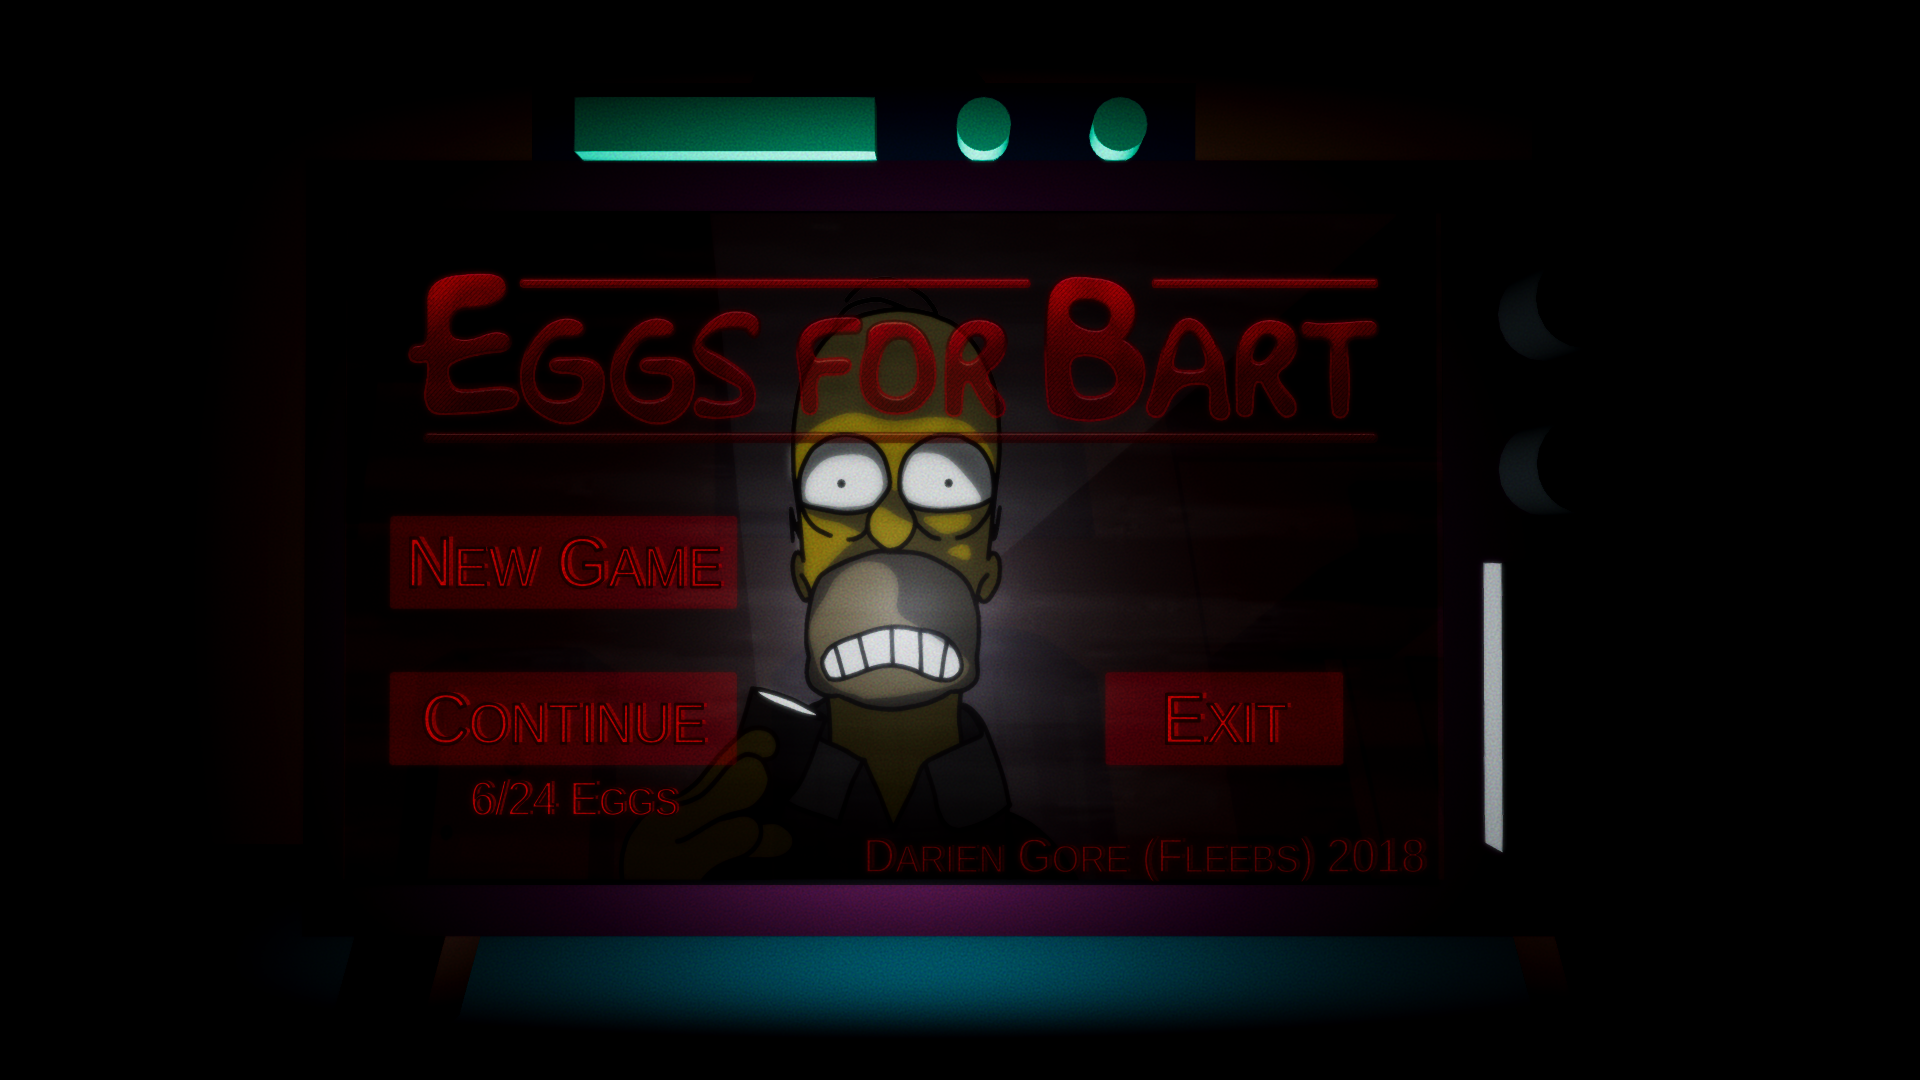 Eggs for bart